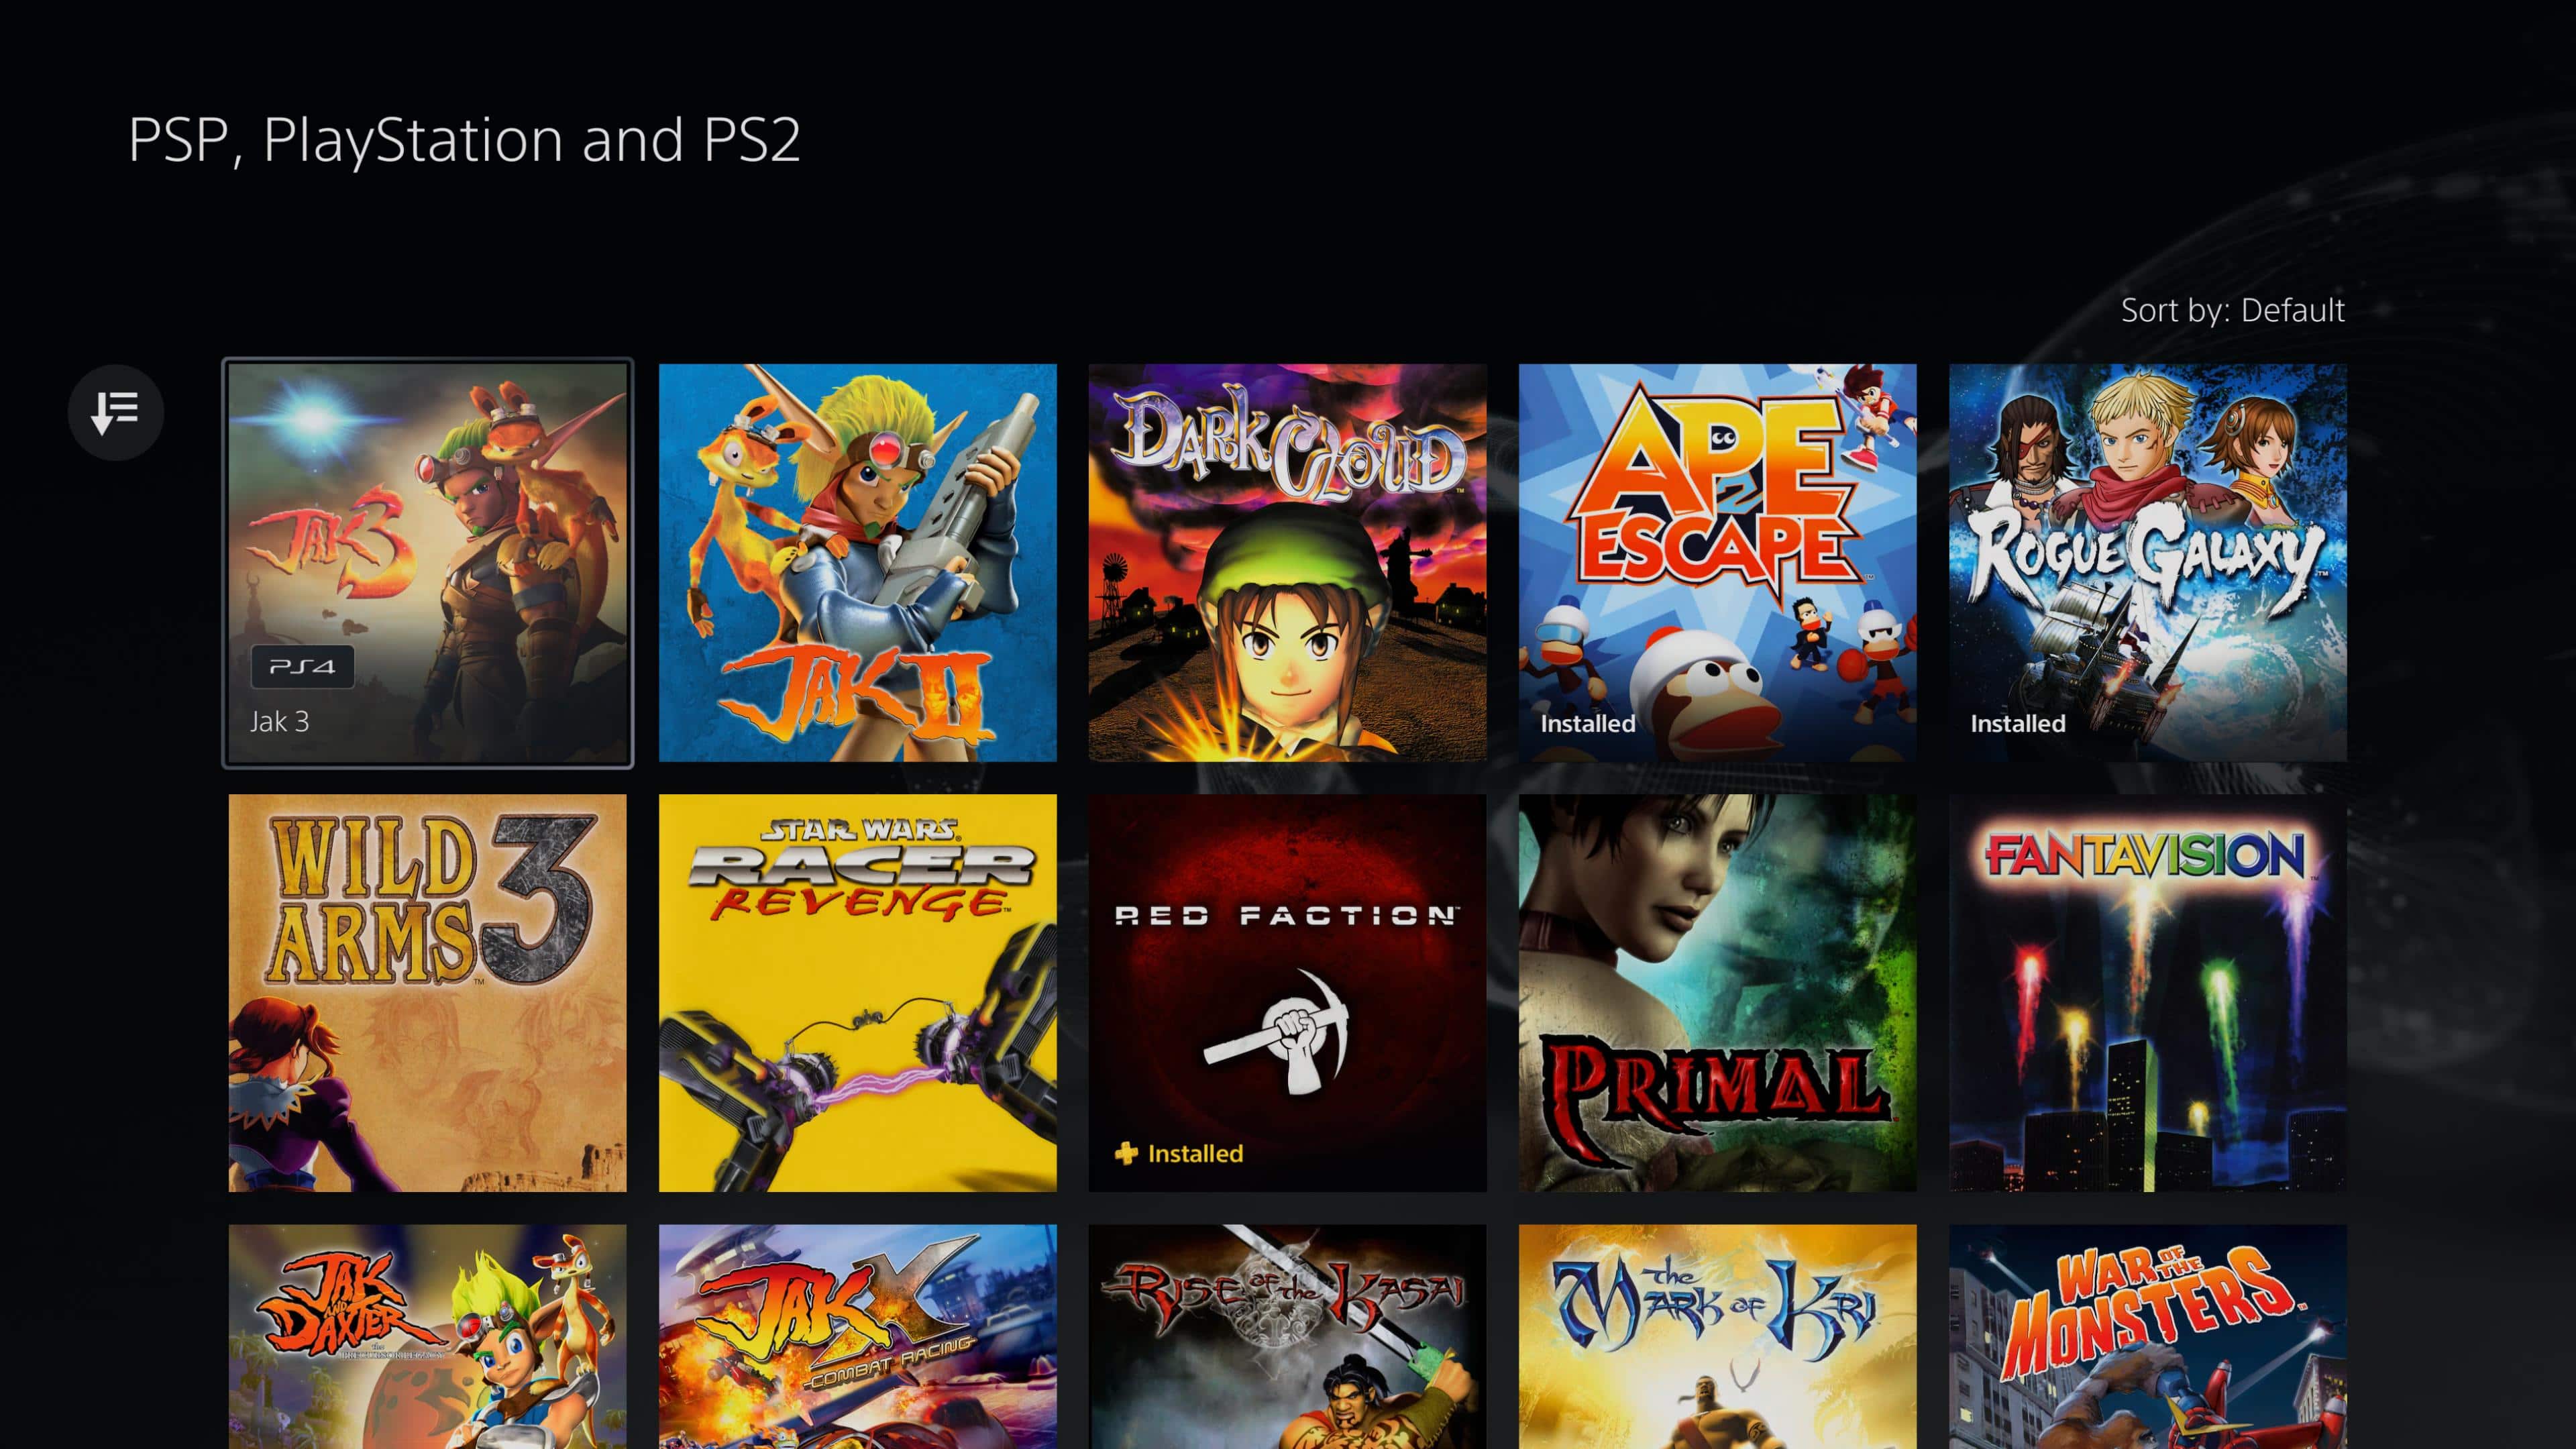 Nuevo servicio de PlayStation Plus ¿Compite con Xbox Game Pass? aquí te damos nuestras impresiones